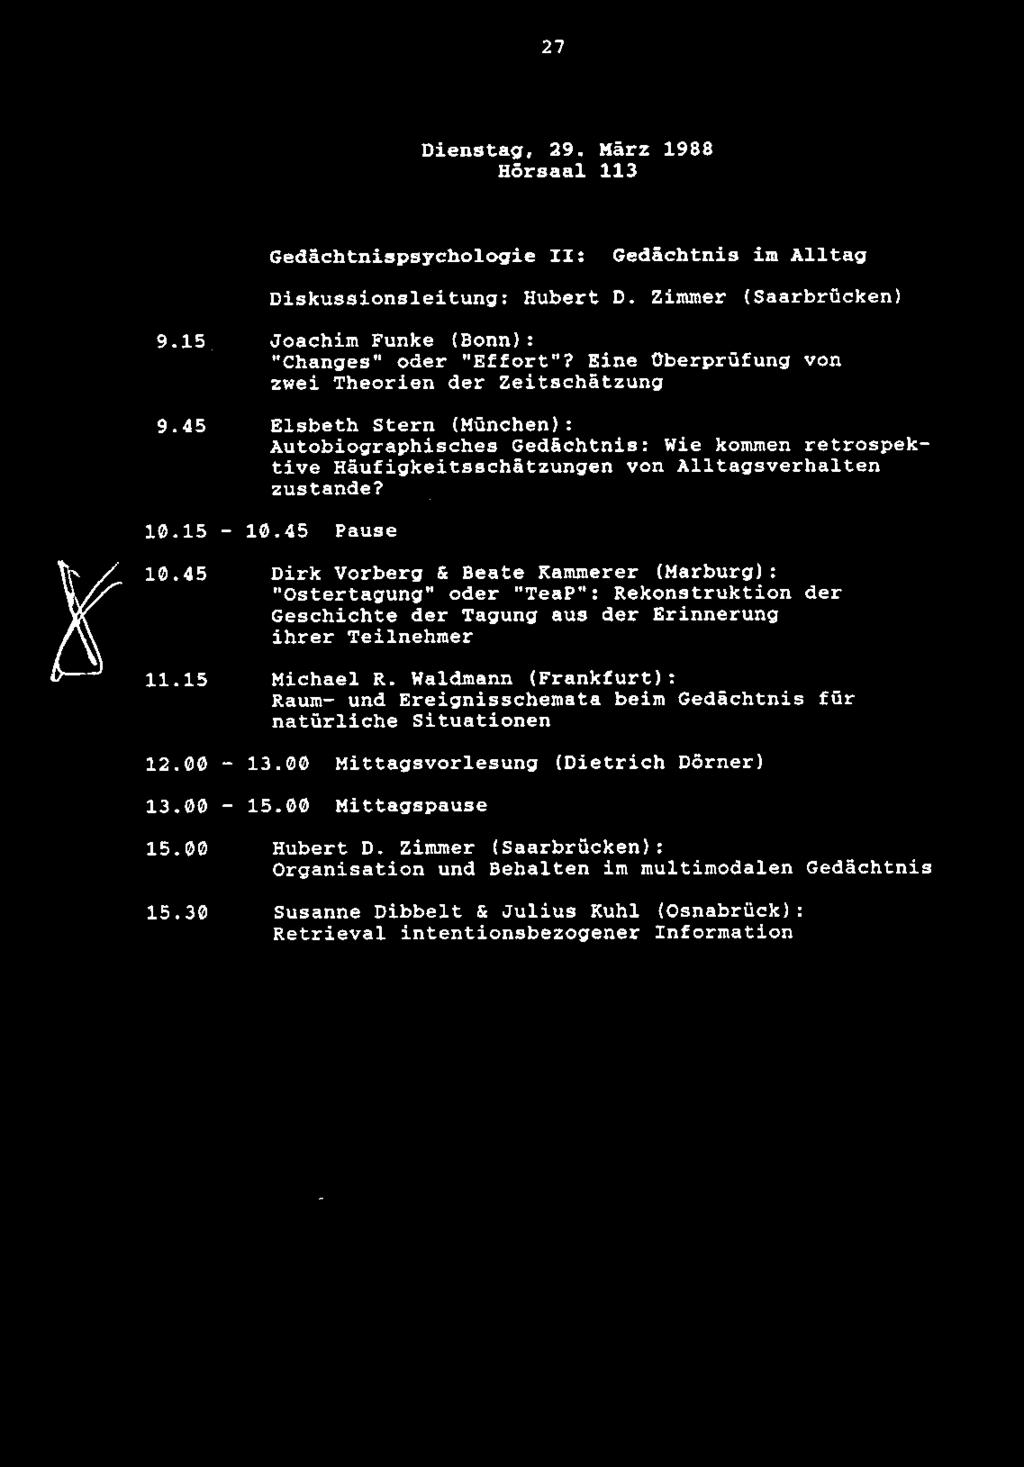 27 Dienstag, 29. Marz 1988 Horsaal 113 Gedachtnispsychologie II: Gedachtnis im Alltag Diskussionsleitung: Hubert D. Zimmer (Saarbrucken) 9.15 Joachim Funke (Bonn): "Changes" Oder "Effort"?